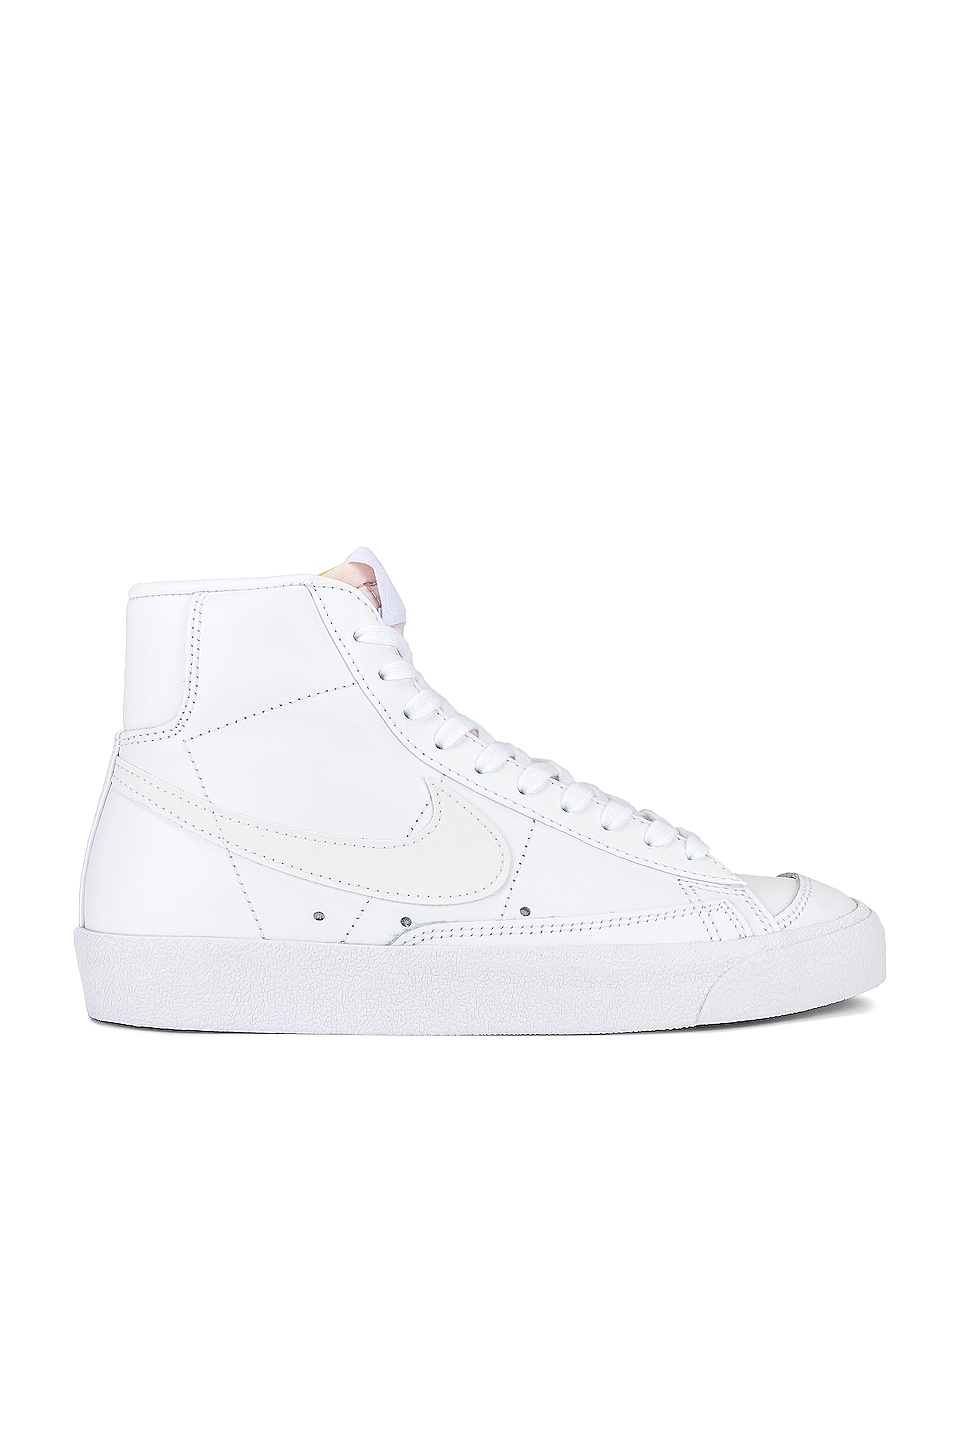 Nike Blazer Mid '77 Vintage Sneaker White & White